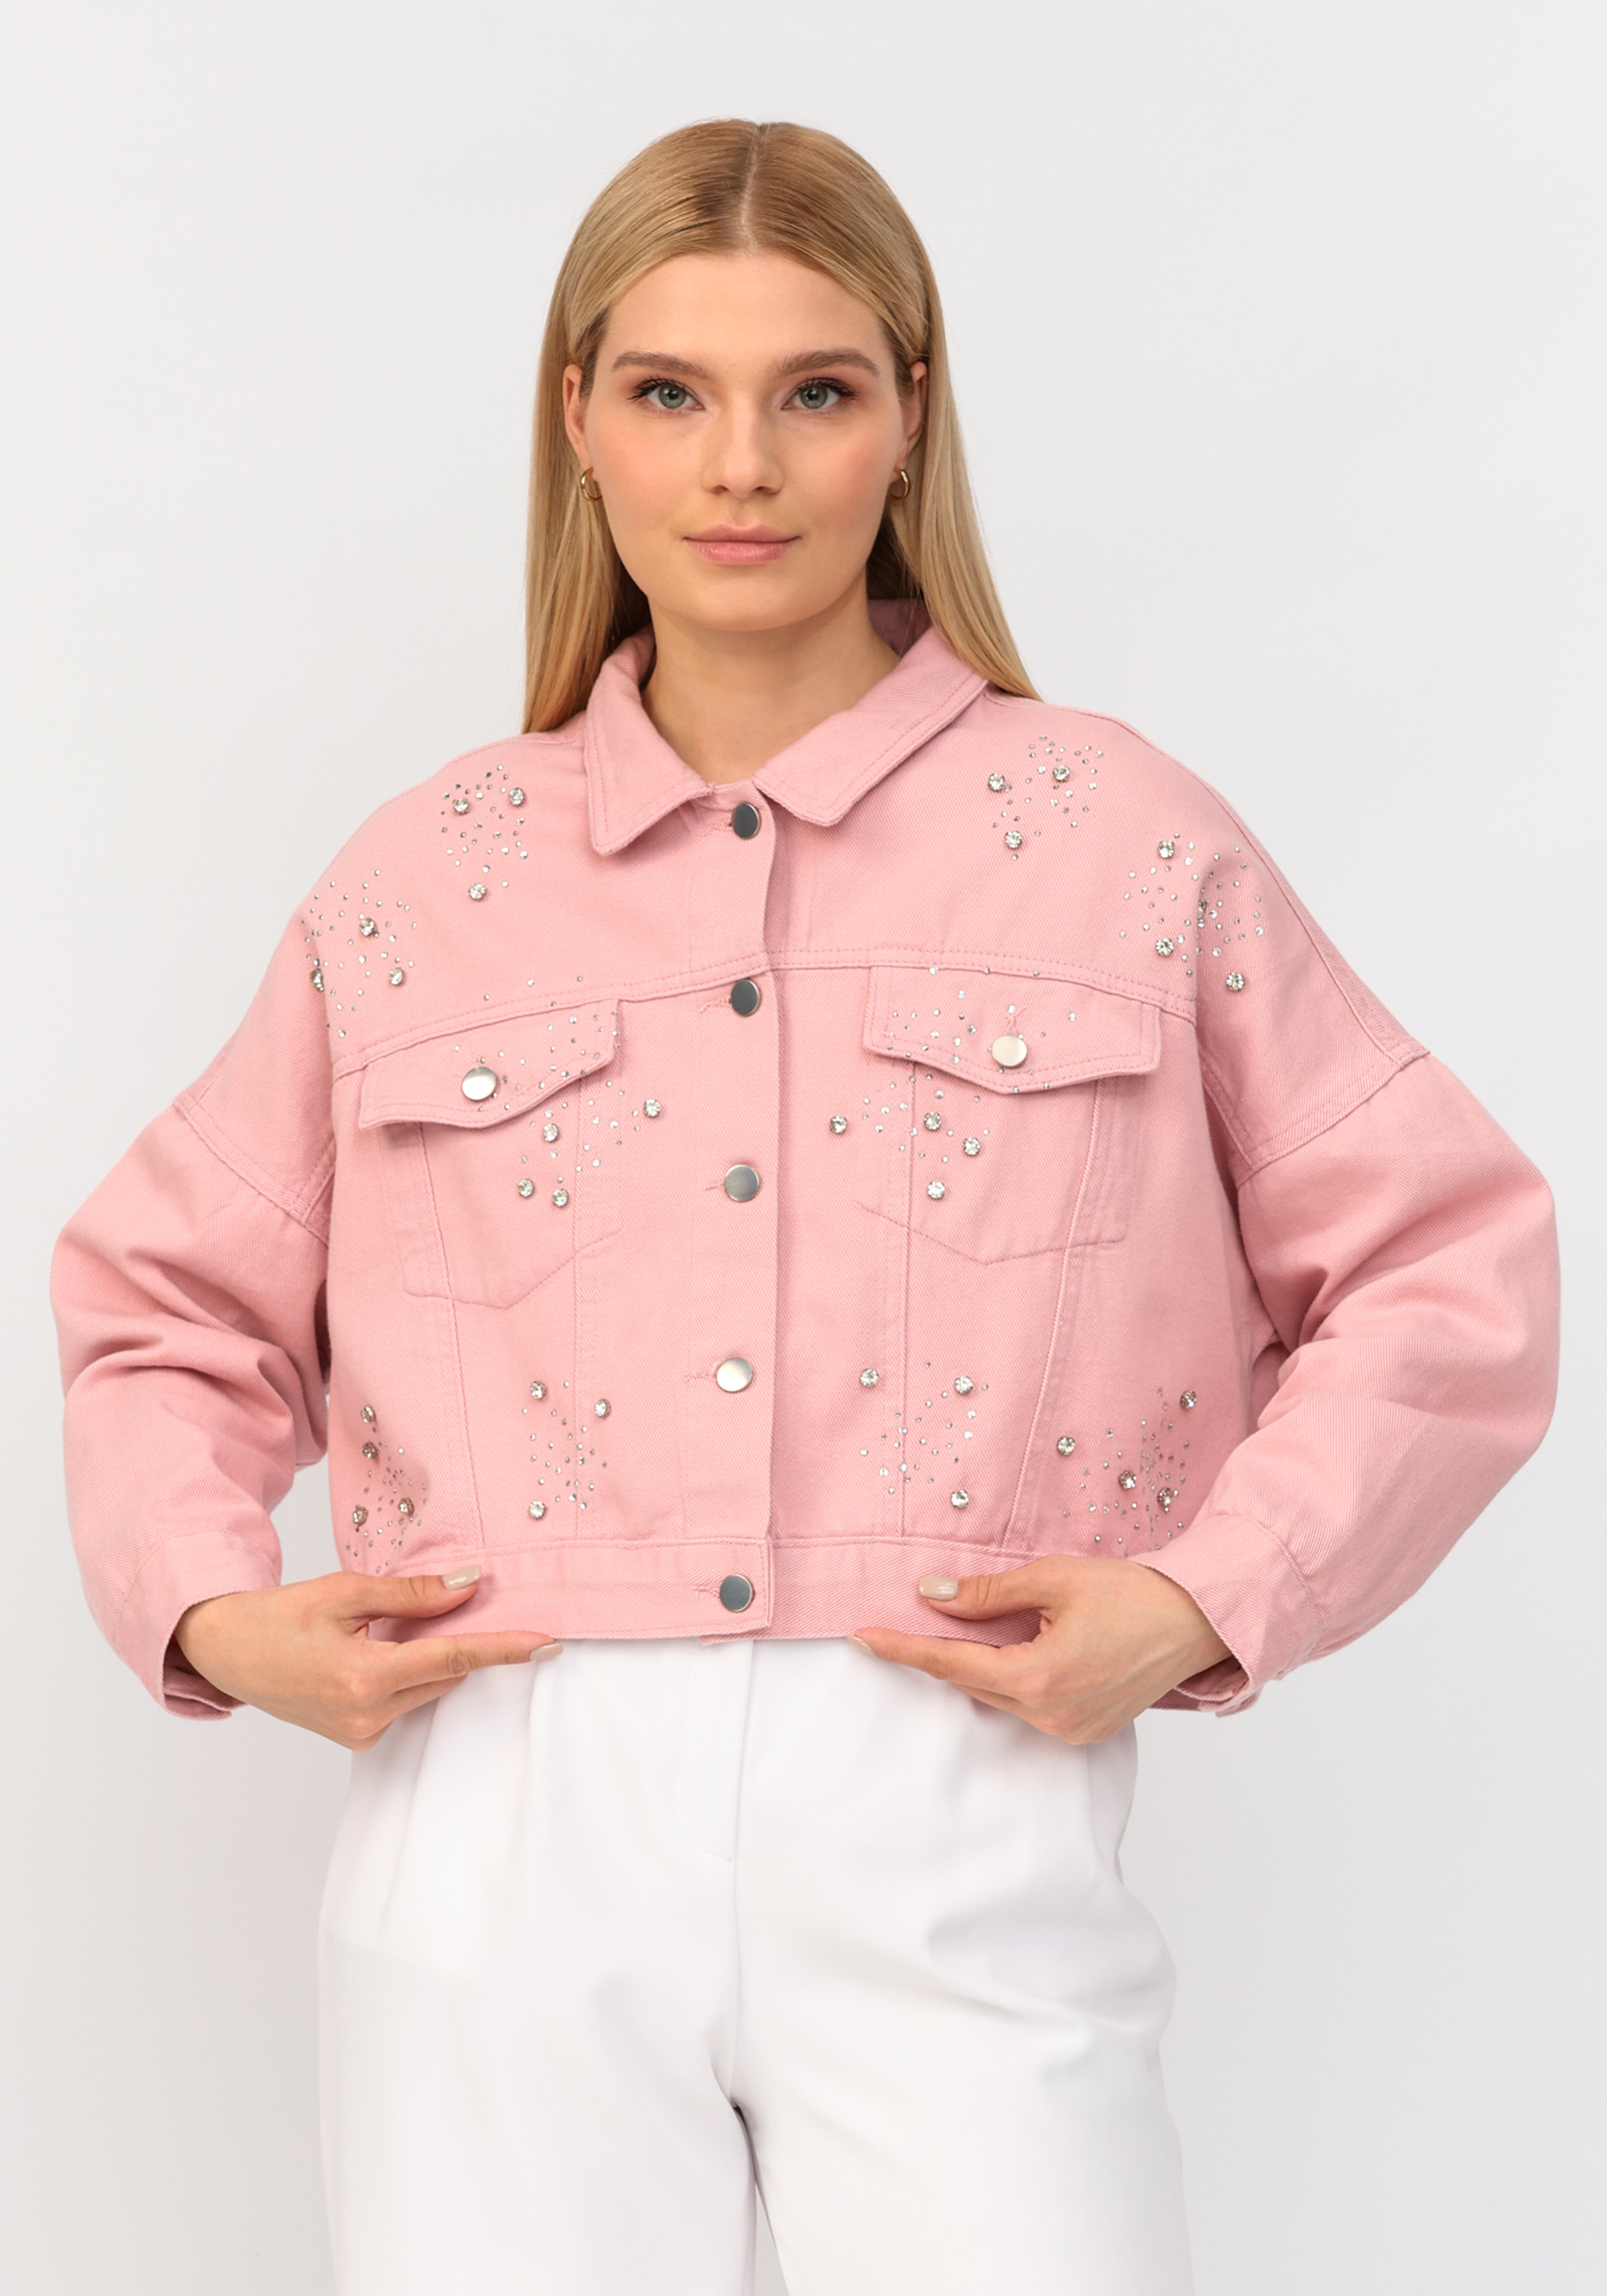 Джинсовая куртка со стразами No name, размер 52-54, цвет розовый